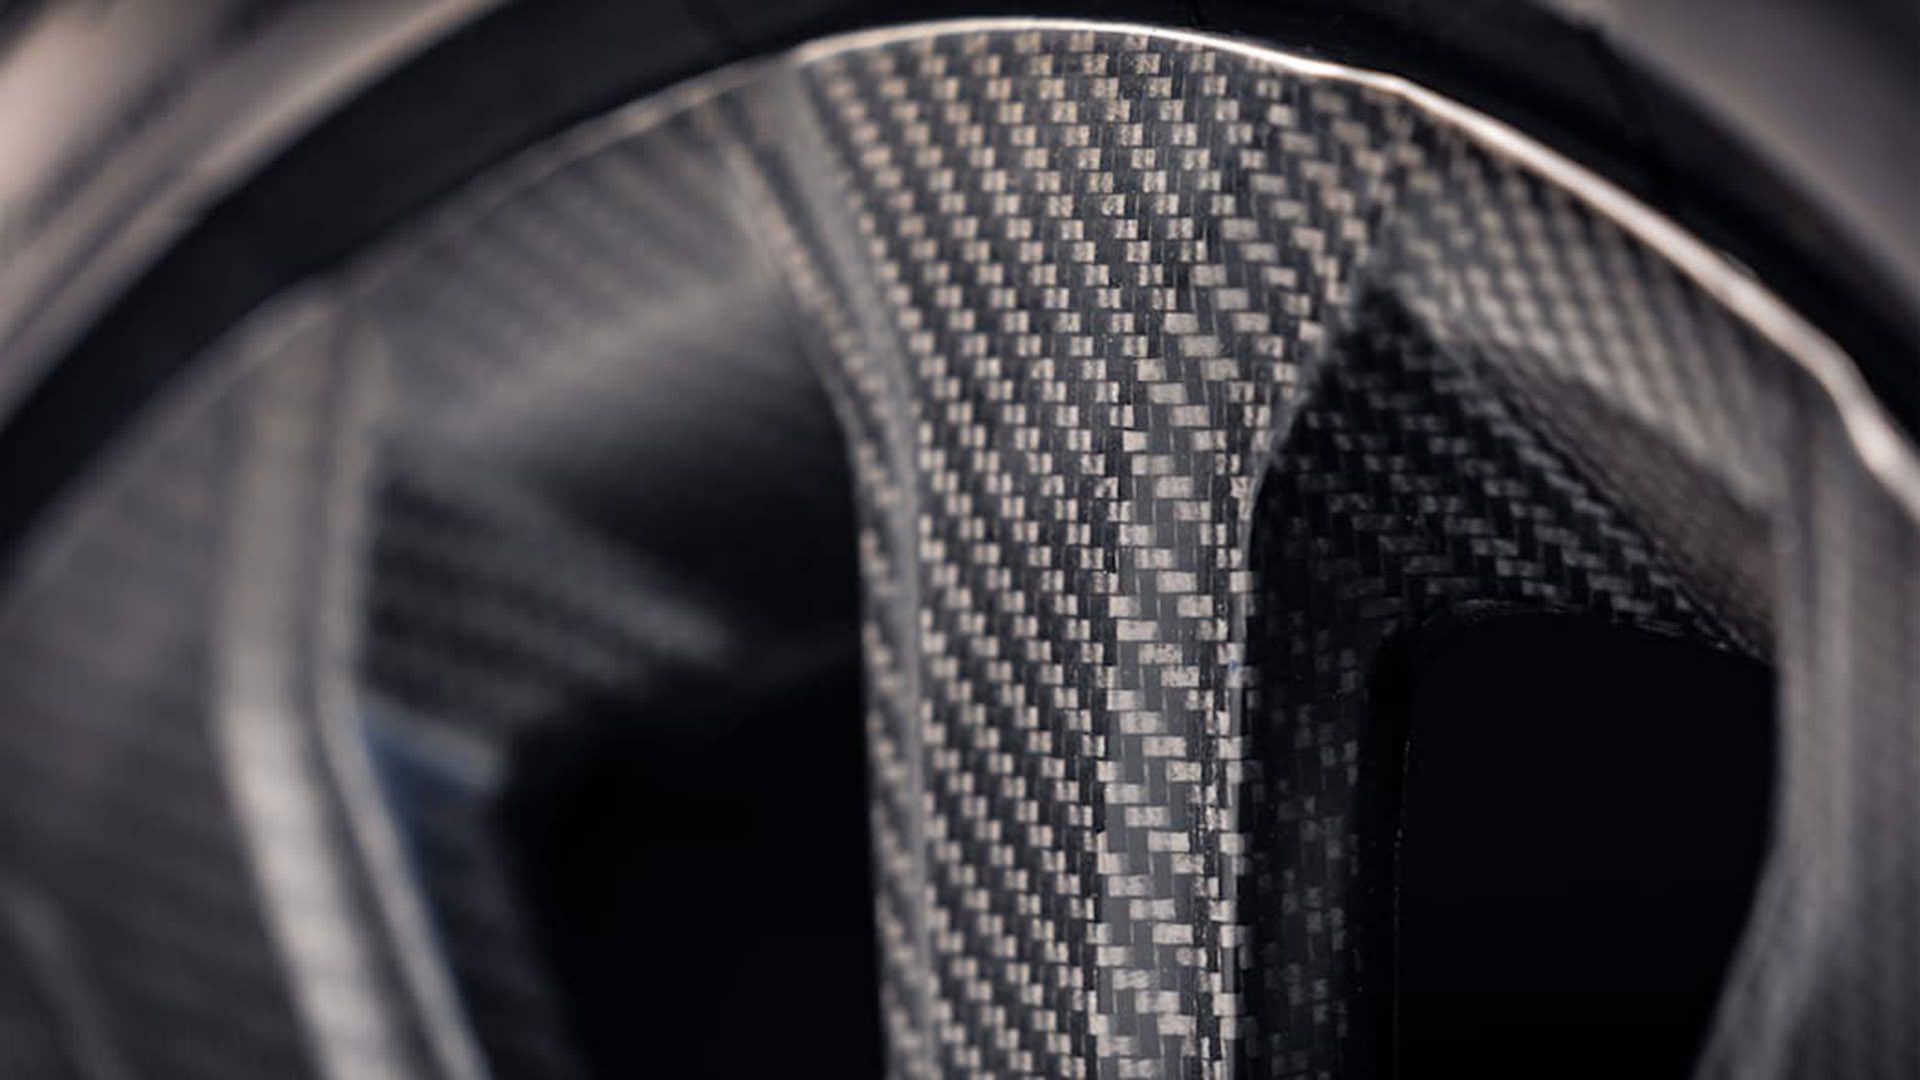 نمای نزدیک رینگ فیبر کربنی / Carbon fiber wheel بنتلی بنتایگا / Bentley Bentayga